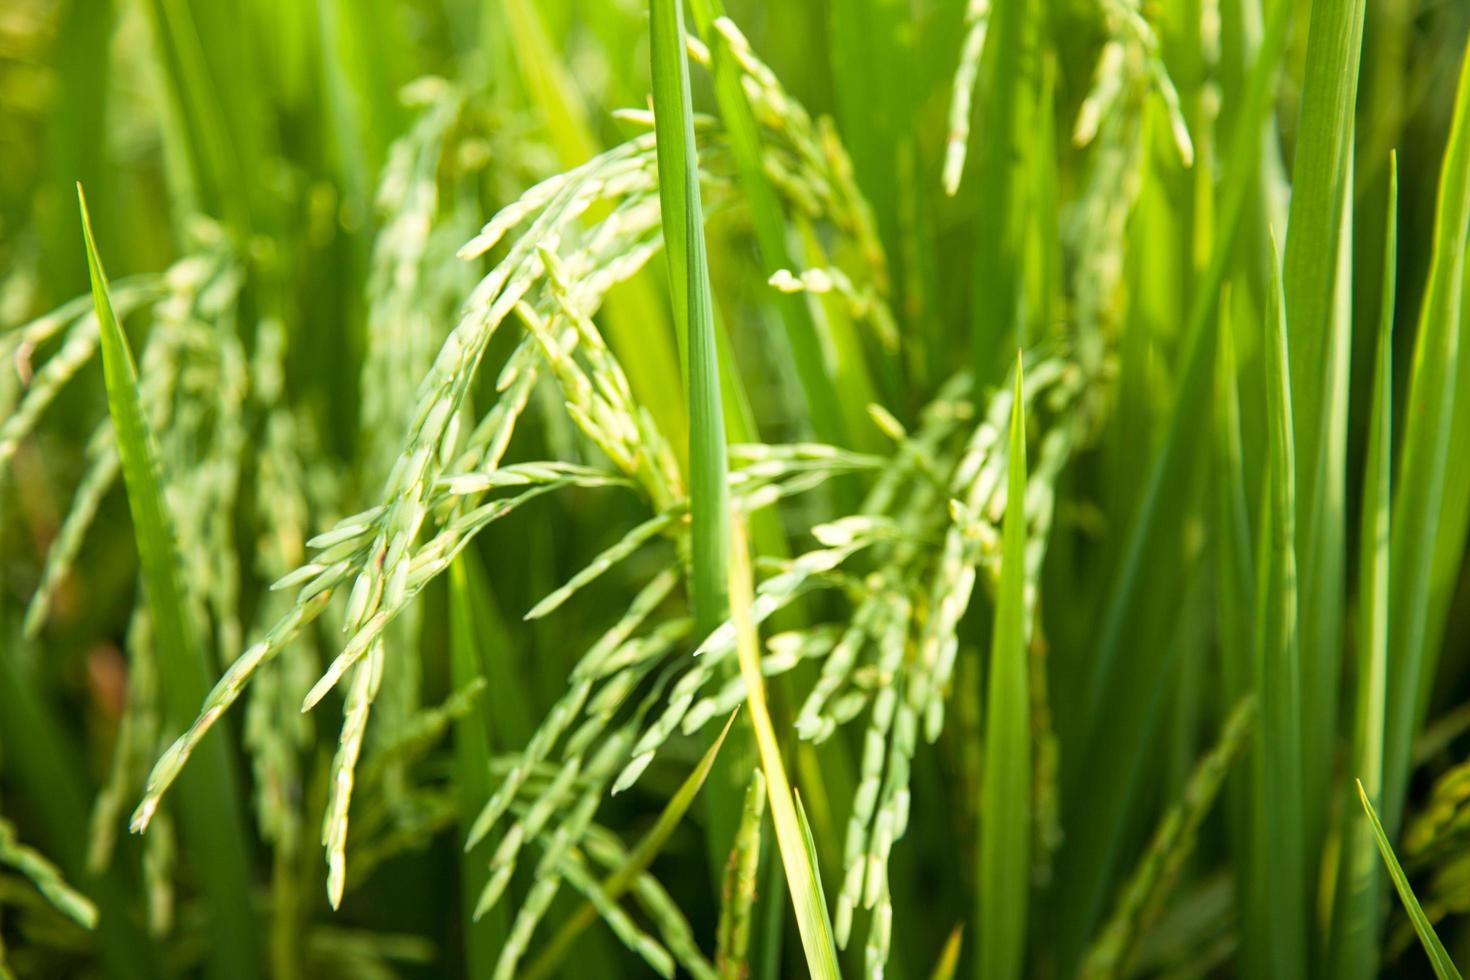 campo de arroz en tailandia foto